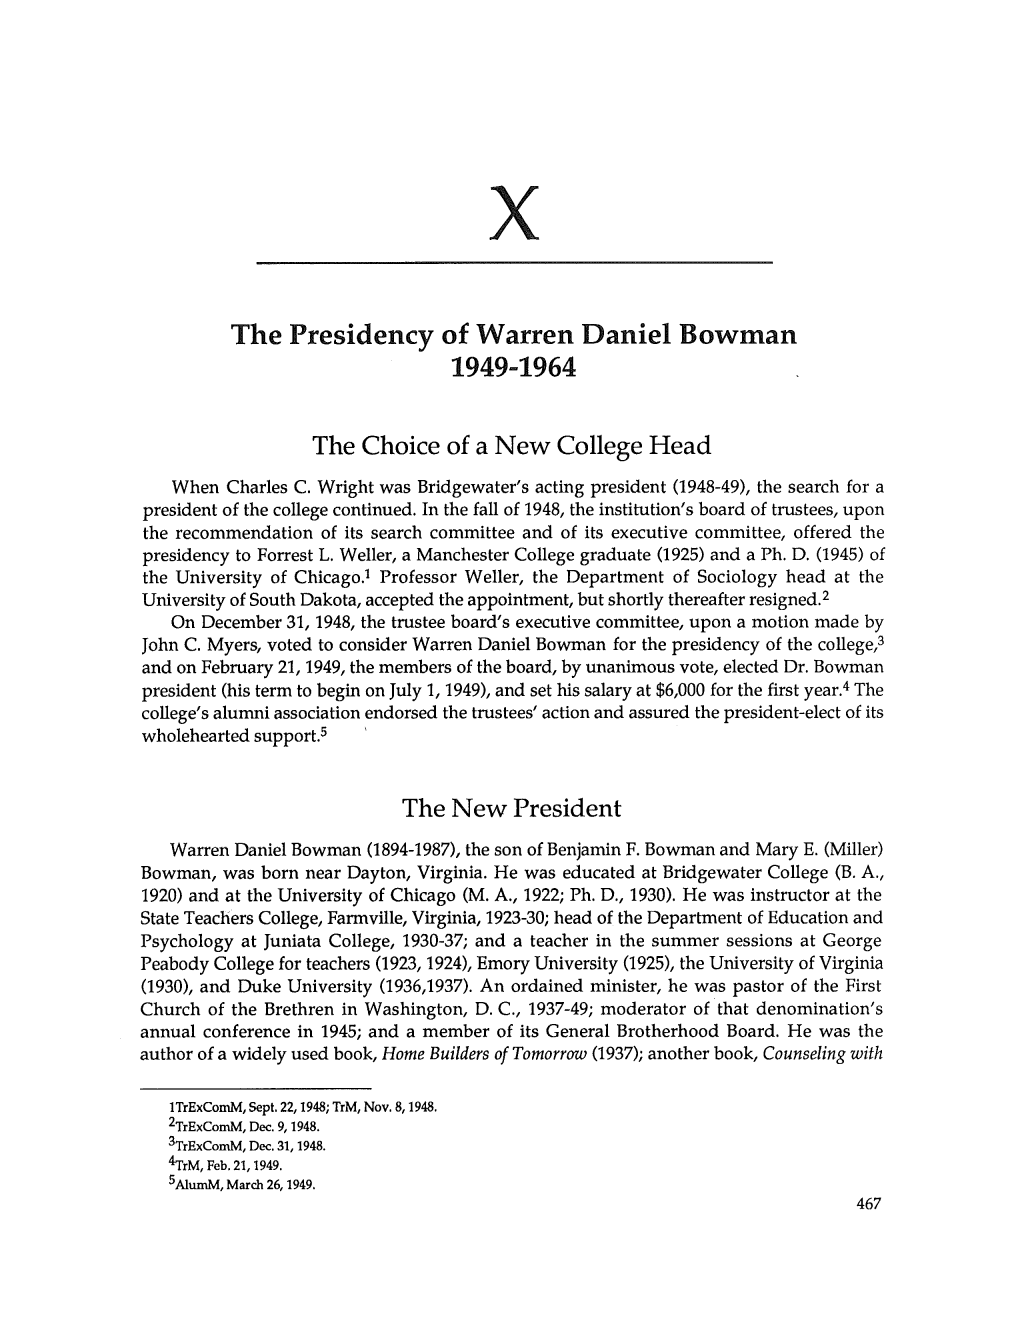 The Presidency of Warren Daniel Bowman 1949-1964